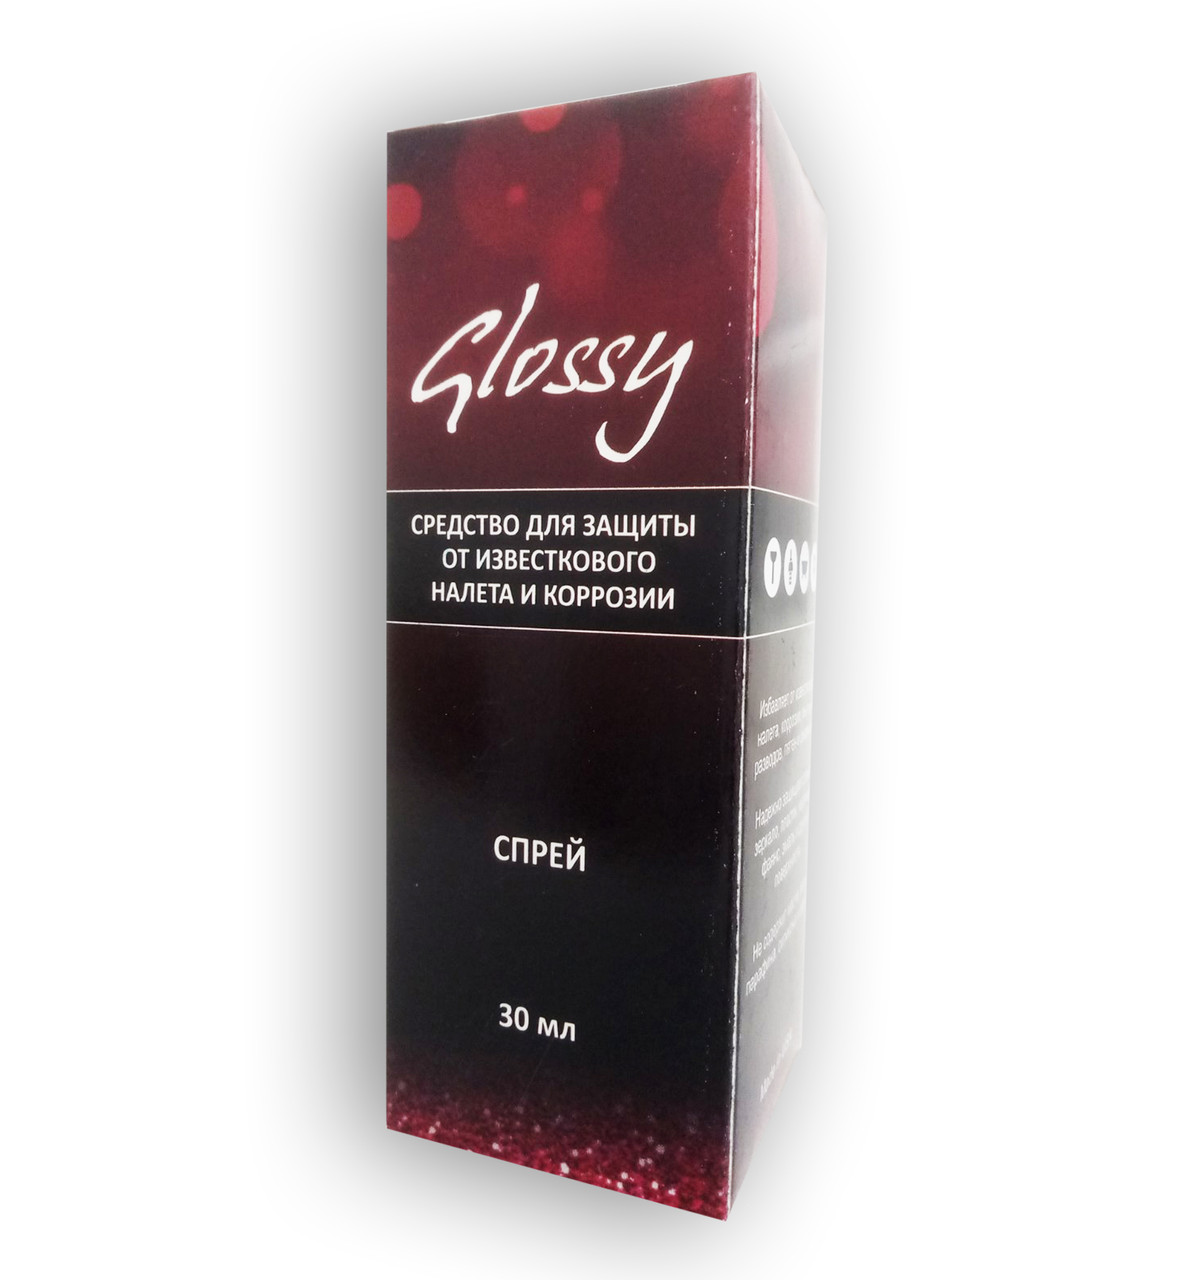 Glossy - Спрей для захисту поверхонь від вапнякового нальоту та корозії (Глоссі)